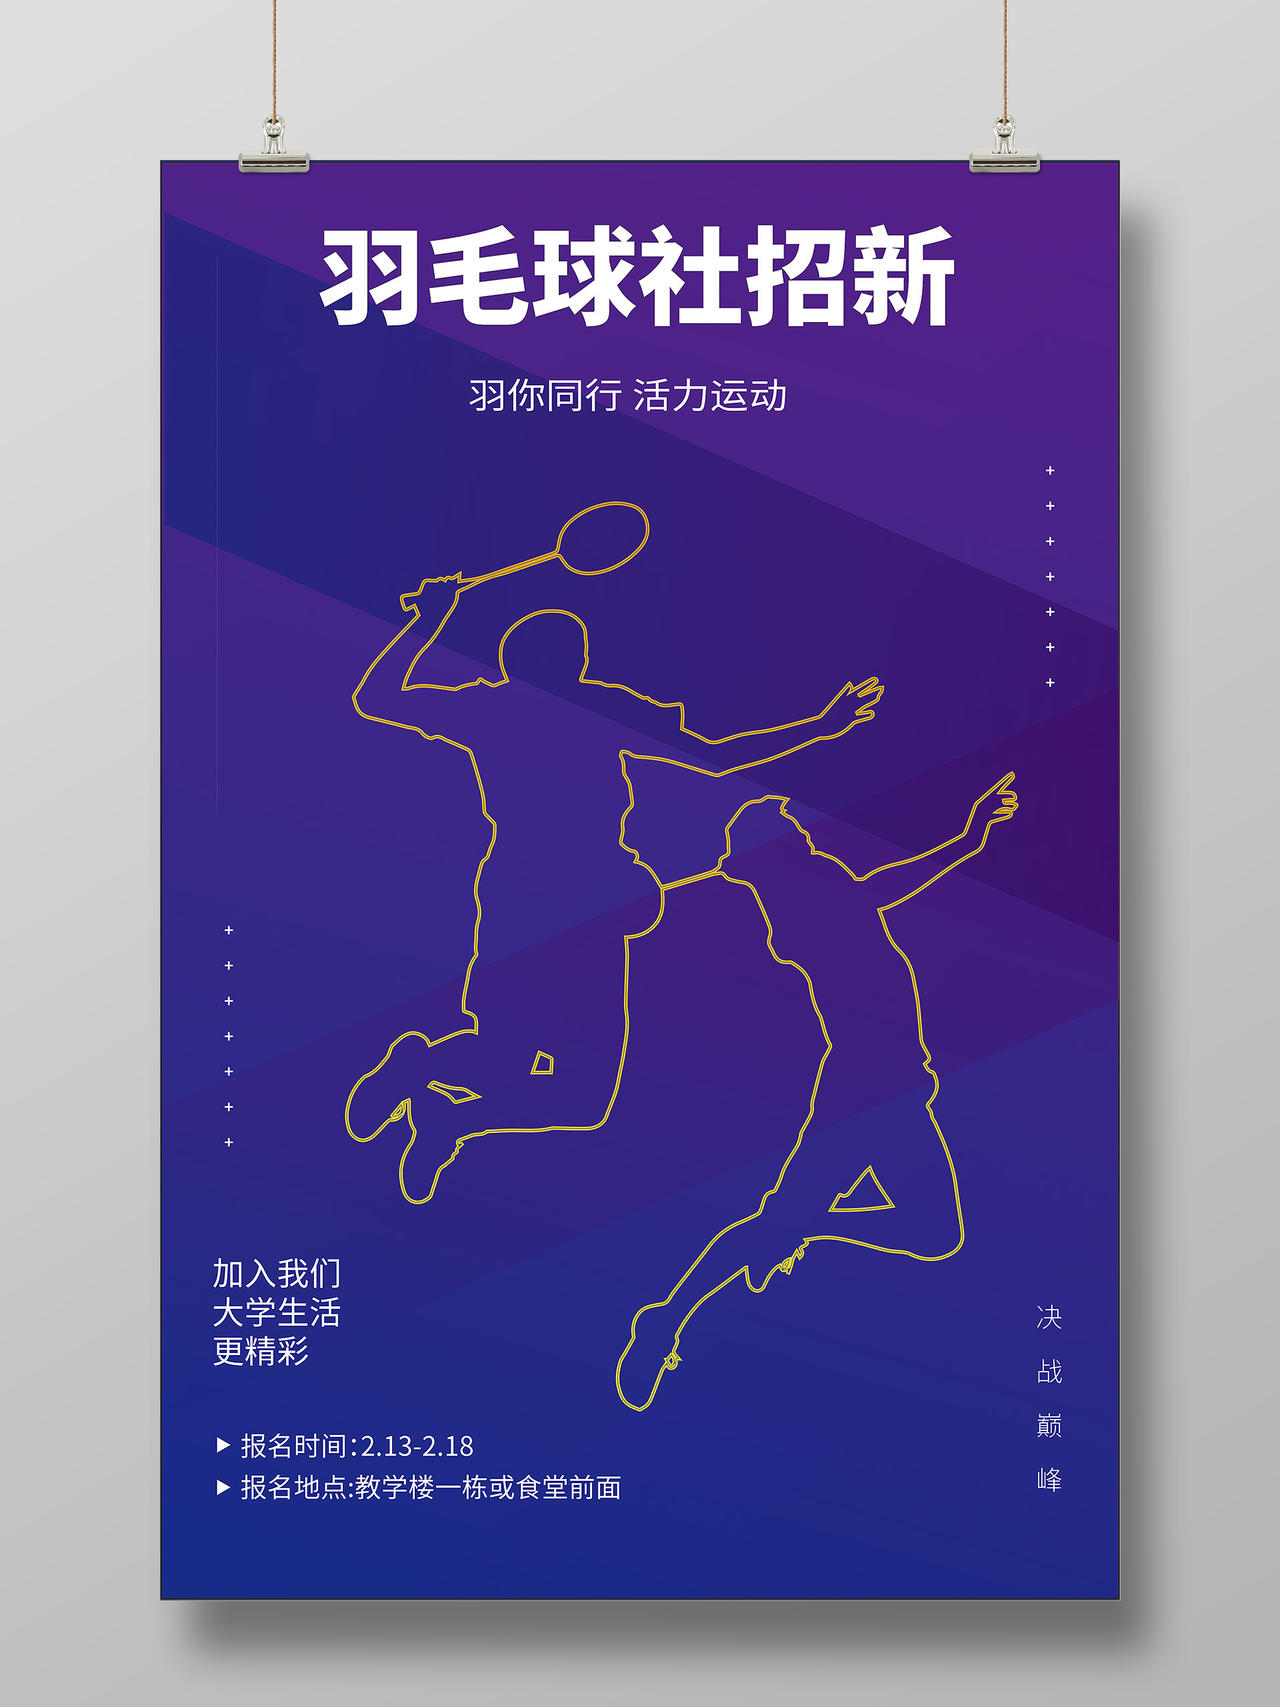 蓝色时尚简约羽毛球社招新海报运动海报